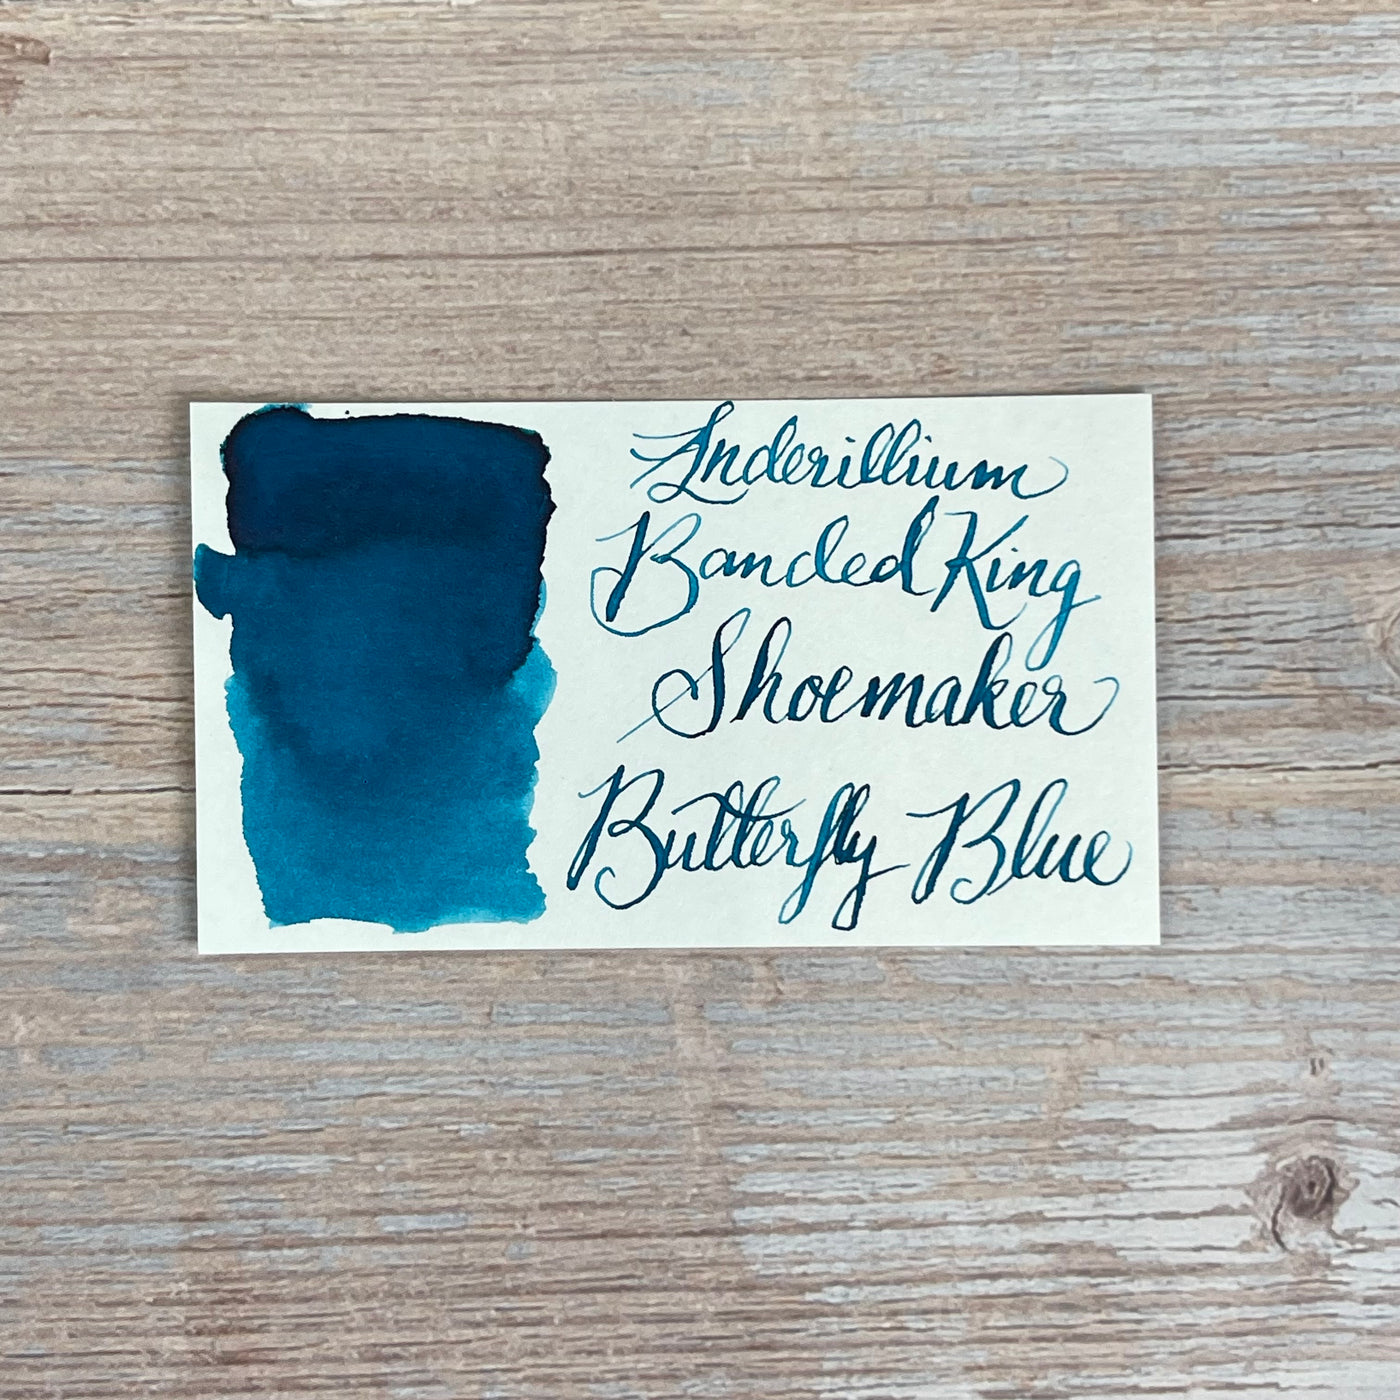 Anderillium Banded King Showemaker Butterfly Blue - 1.5 Oz Bottled Ink